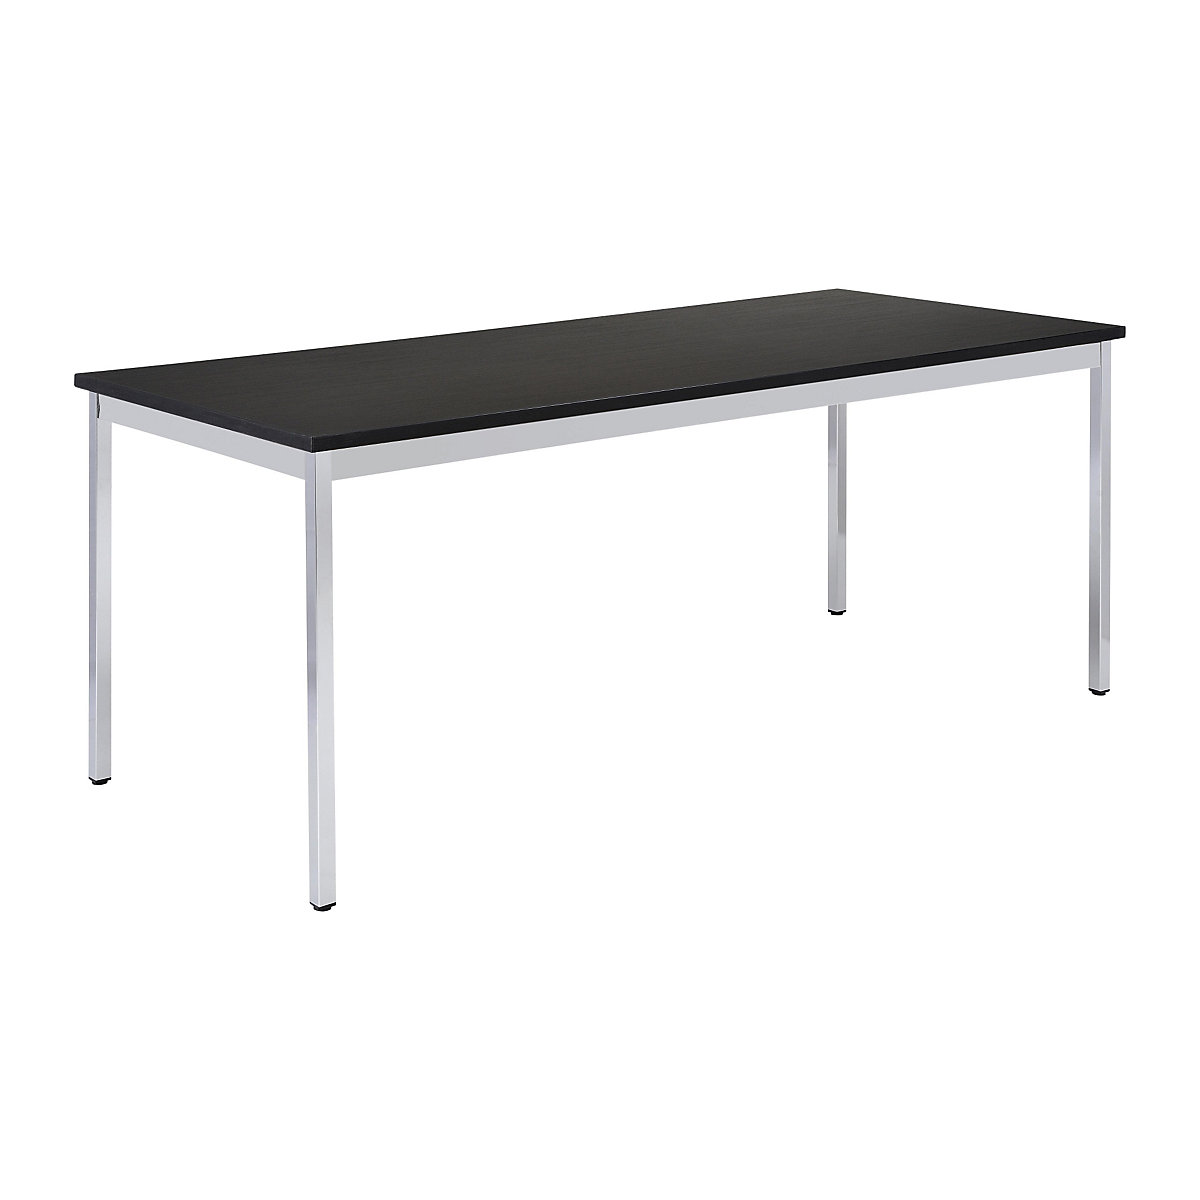 Víceúčelový stůl – eurokraft basic, obdélníkový tvar, š x v 1200 x 740 mm, hloubka 800 mm, deska černá, podstavec pochromovaný-17